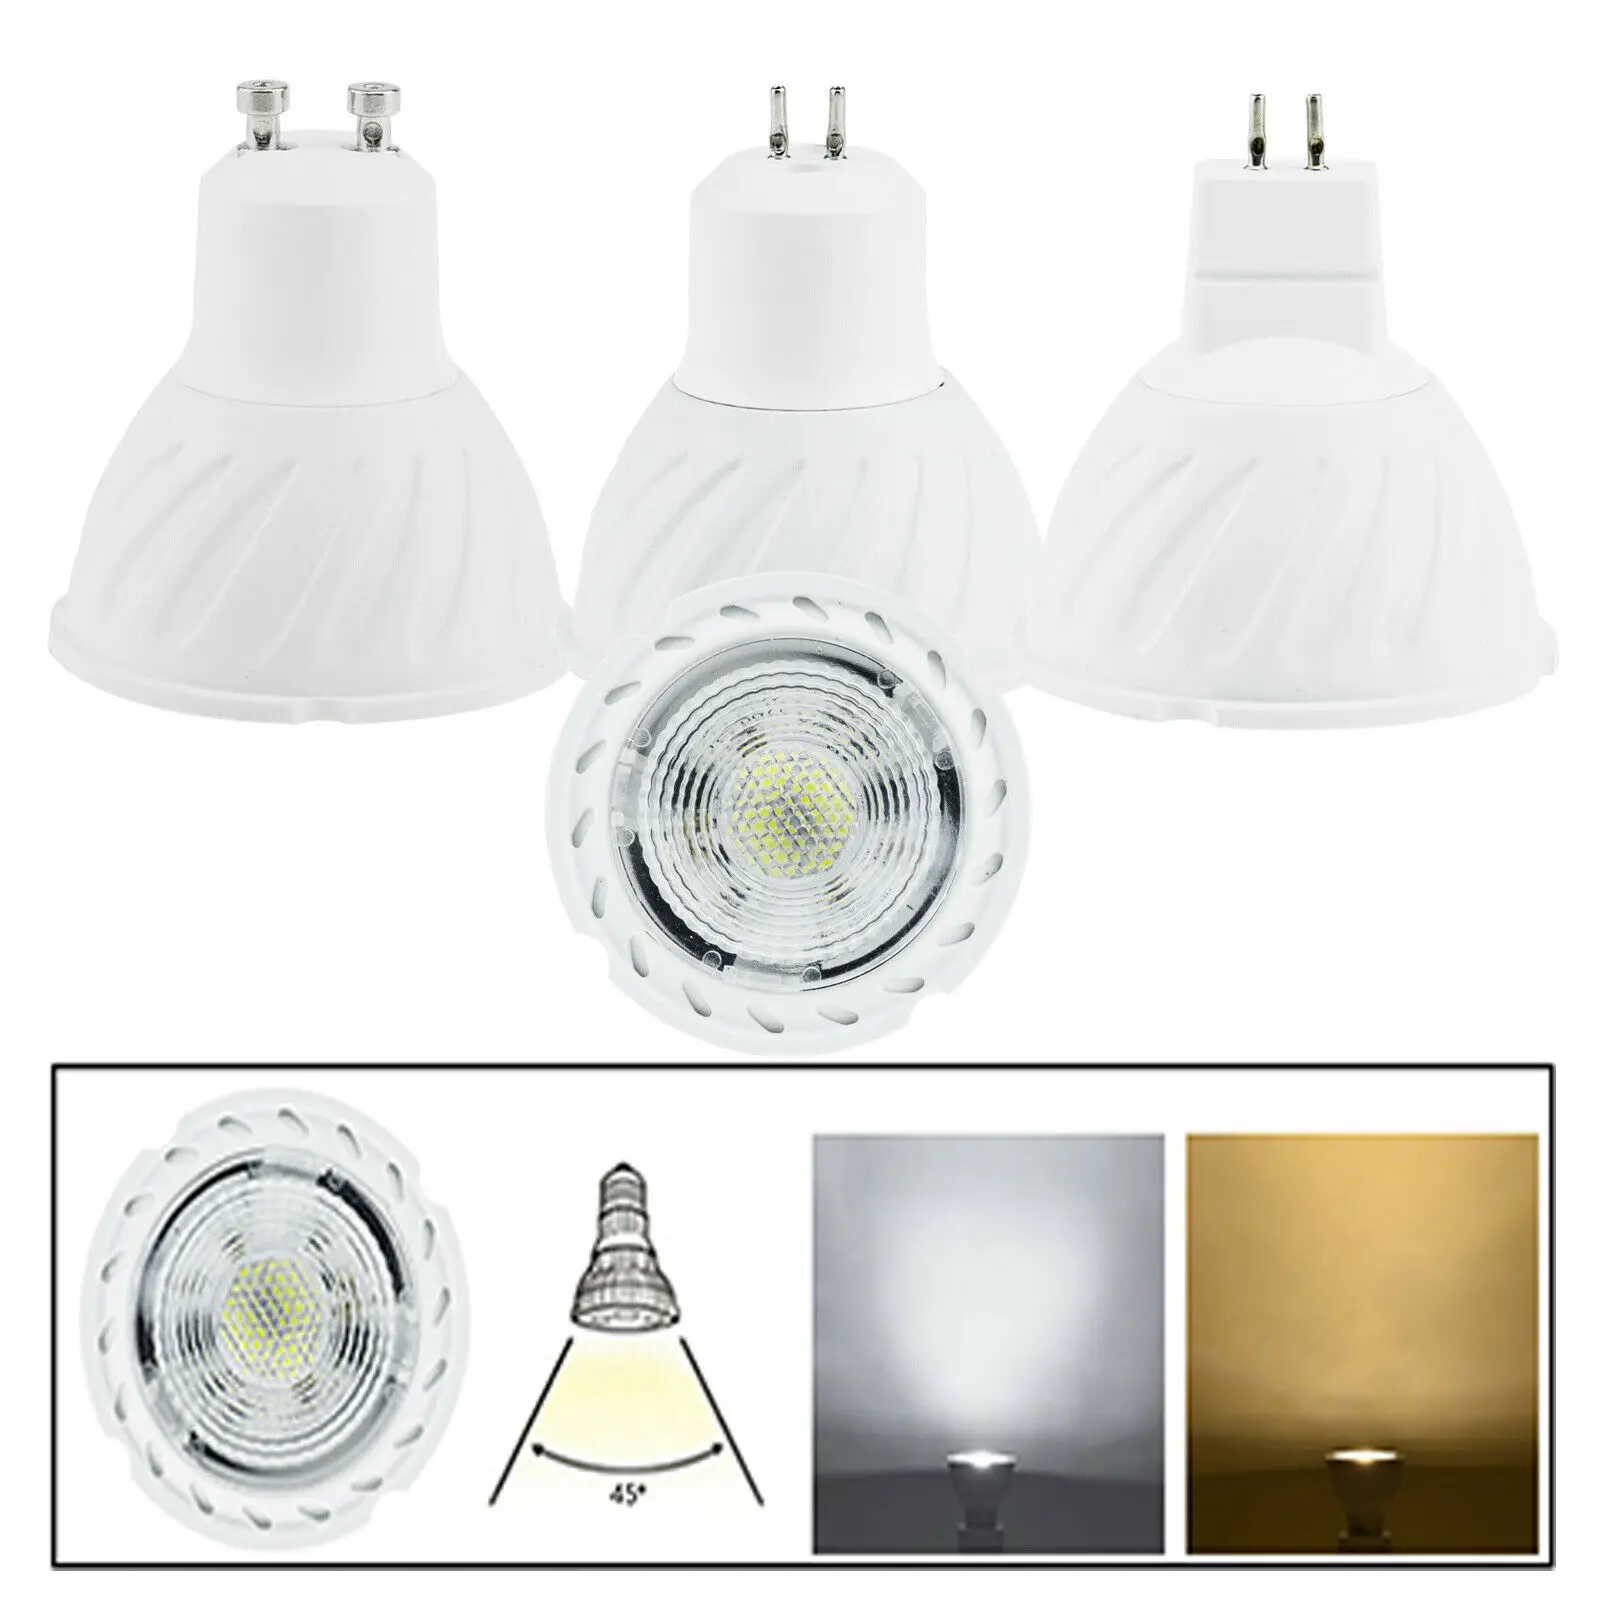 

Высококачественные светодиодные точечные лампы GU5.3 GU10 MR16, 7 Вт, 220 В, монолитный блок светодиодов, сменная галогенная лампа 50 Вт, холодный бел...